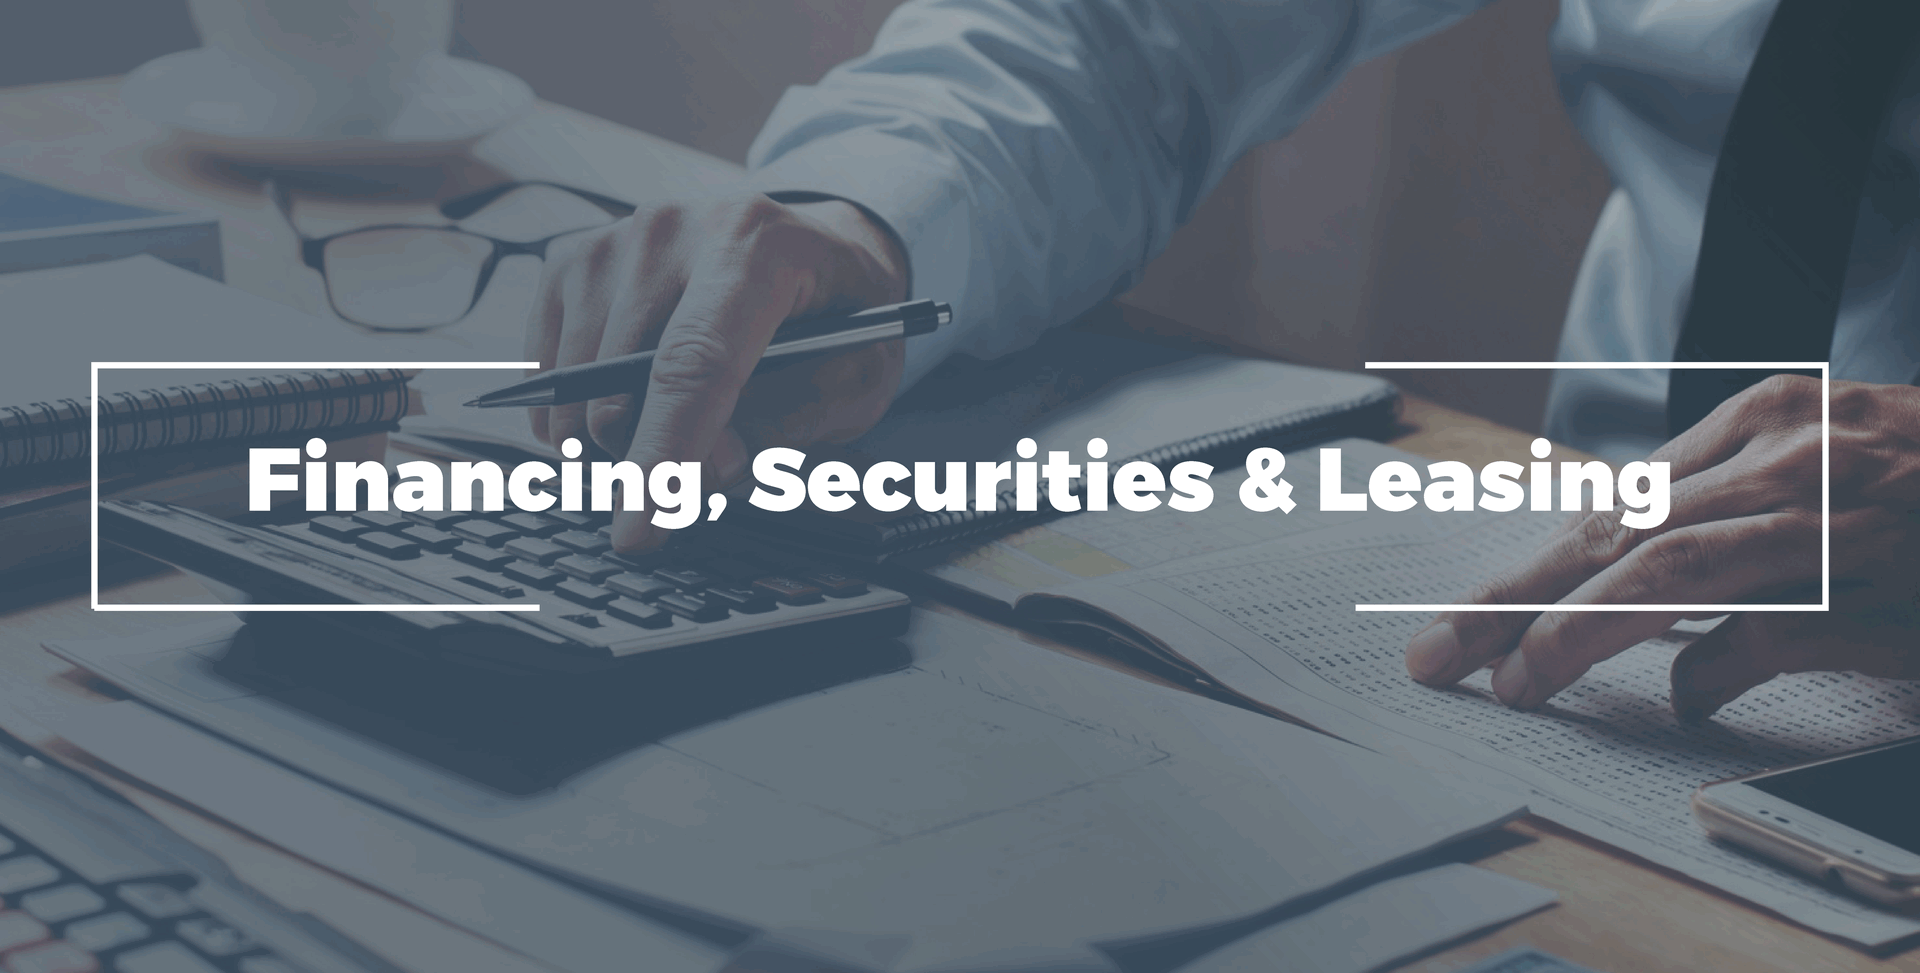 Financing, securities & leasing